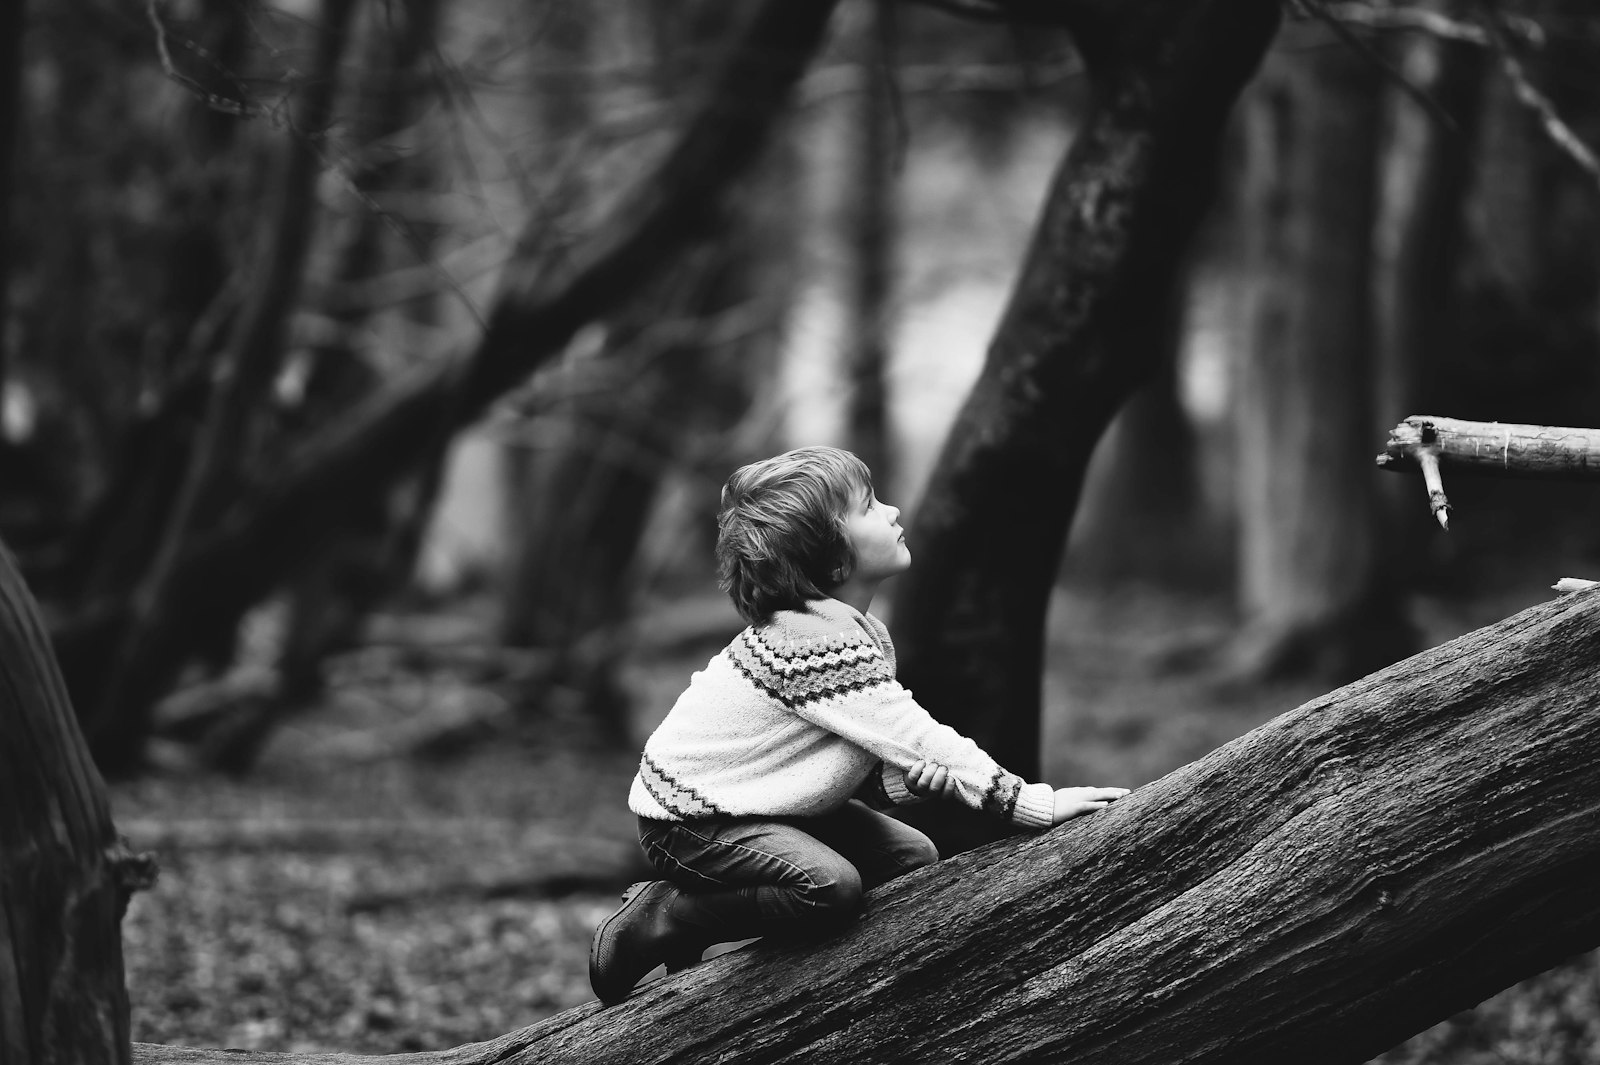 Nikon D4S sample photo. Boy climbing fallen tree photography